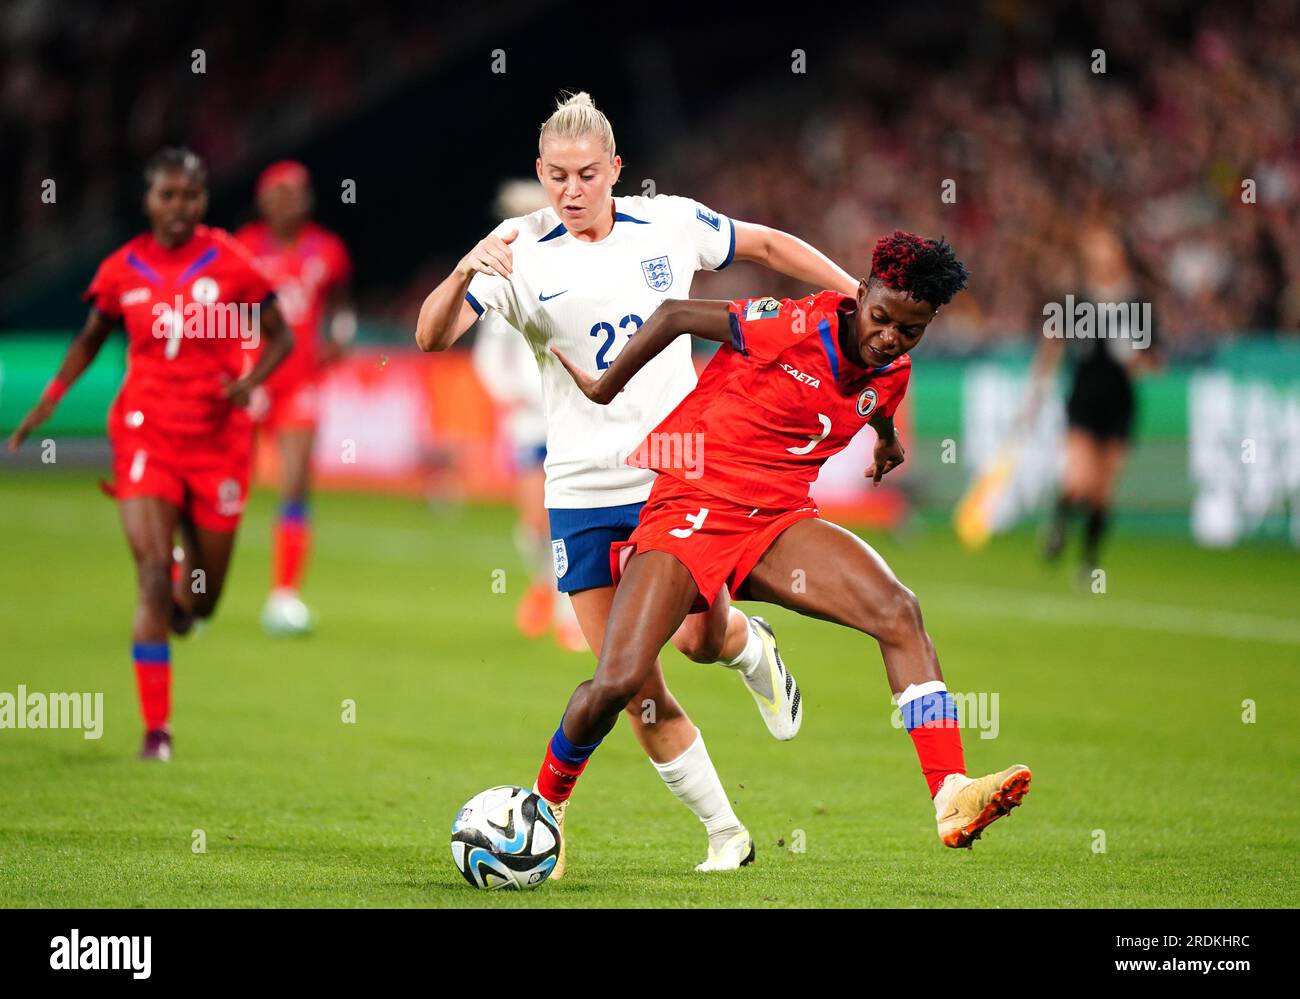 Haitis Jennyfer Limage (rechts) und Englands Alessia Russo kämpfen beim FIFA Women's World Cup 2023, Group D Match im Brisbane Stadium, Brisbane. Bilddatum: Samstag, 22. Juli 2023. Stockfoto